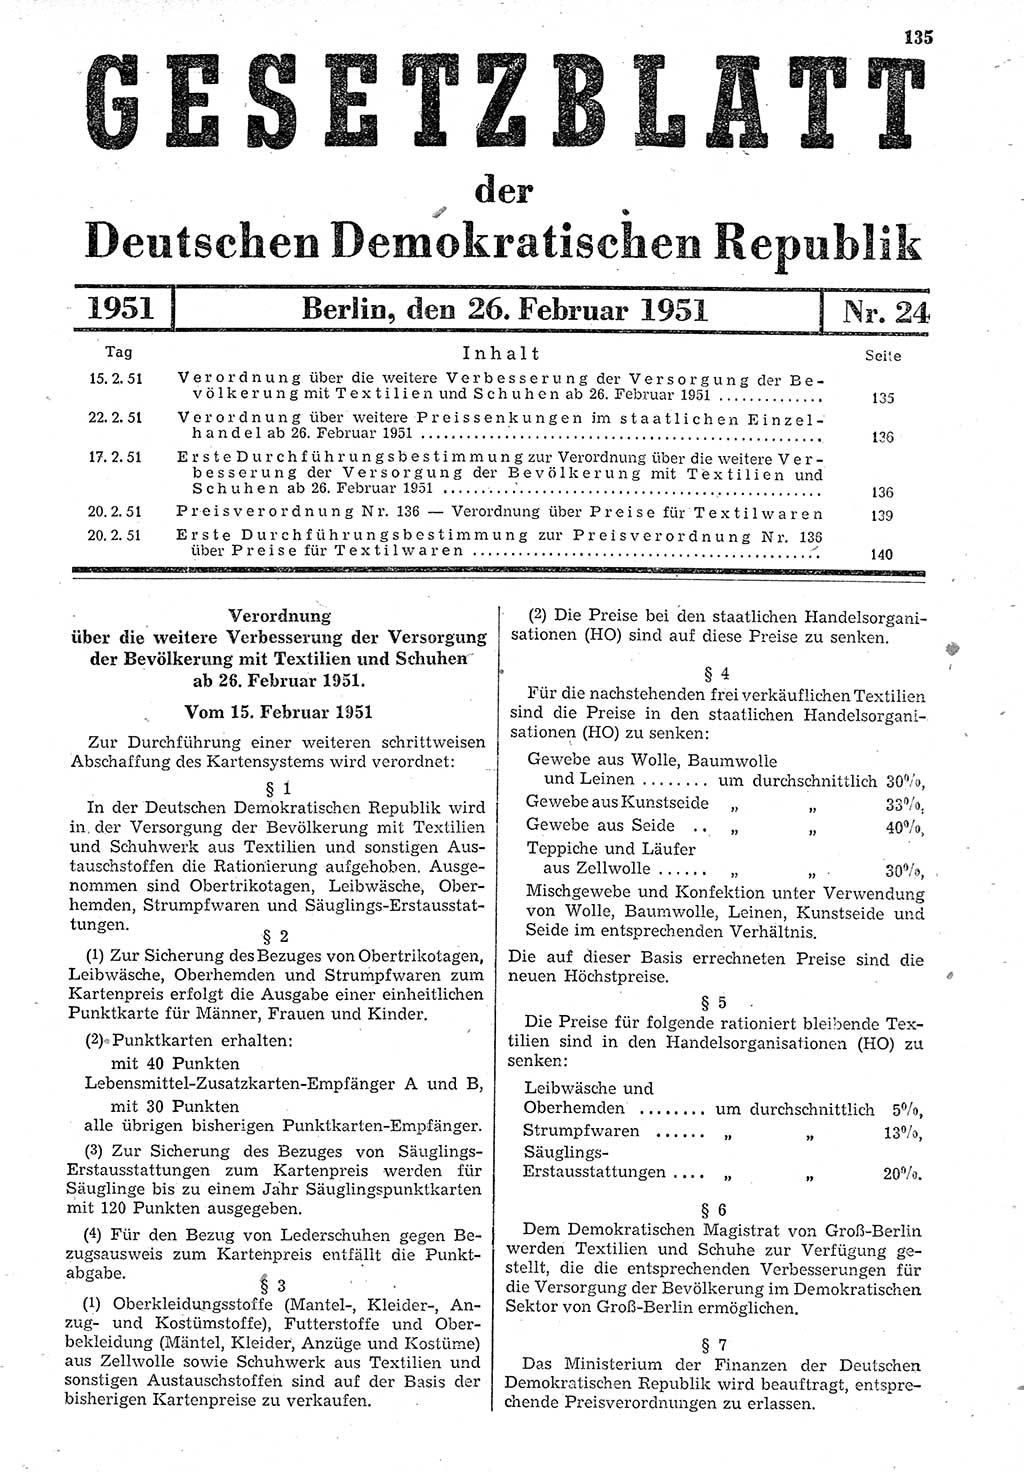 Gesetzblatt (GBl.) der Deutschen Demokratischen Republik (DDR) 1951, Seite 135 (GBl. DDR 1951, S. 135)